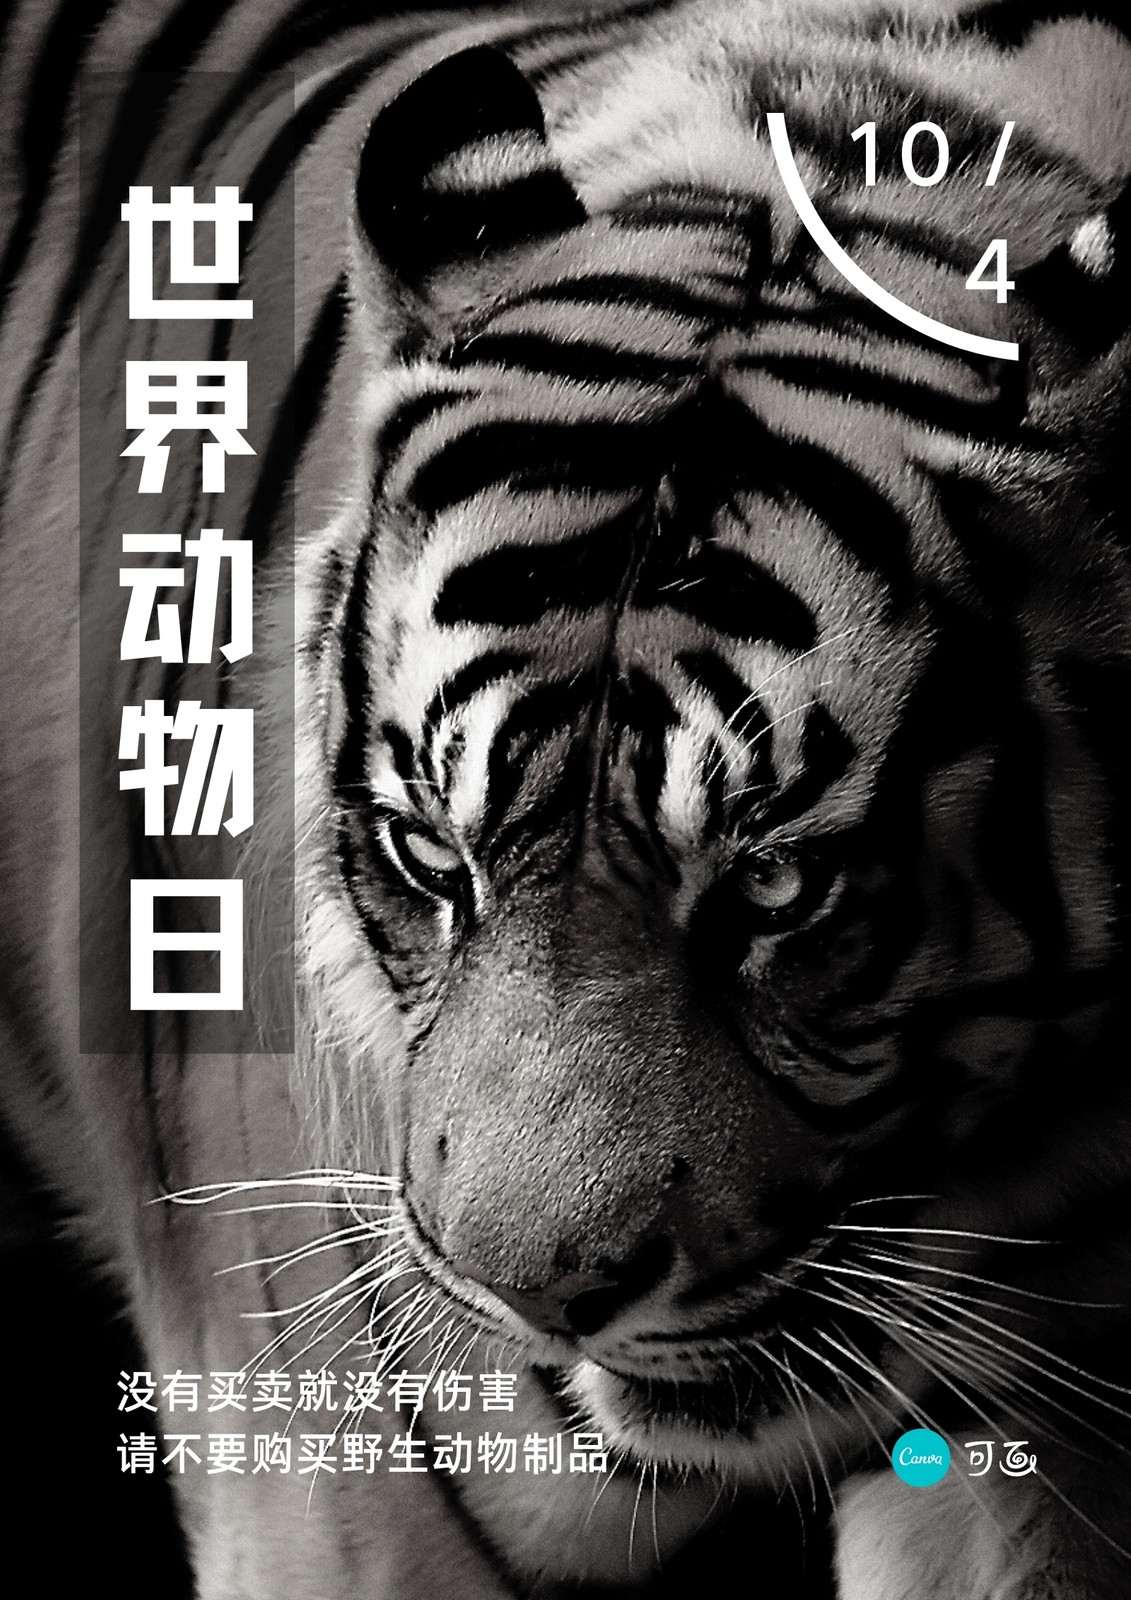 黑白色世界动物日老虎简约节日公益中文海报